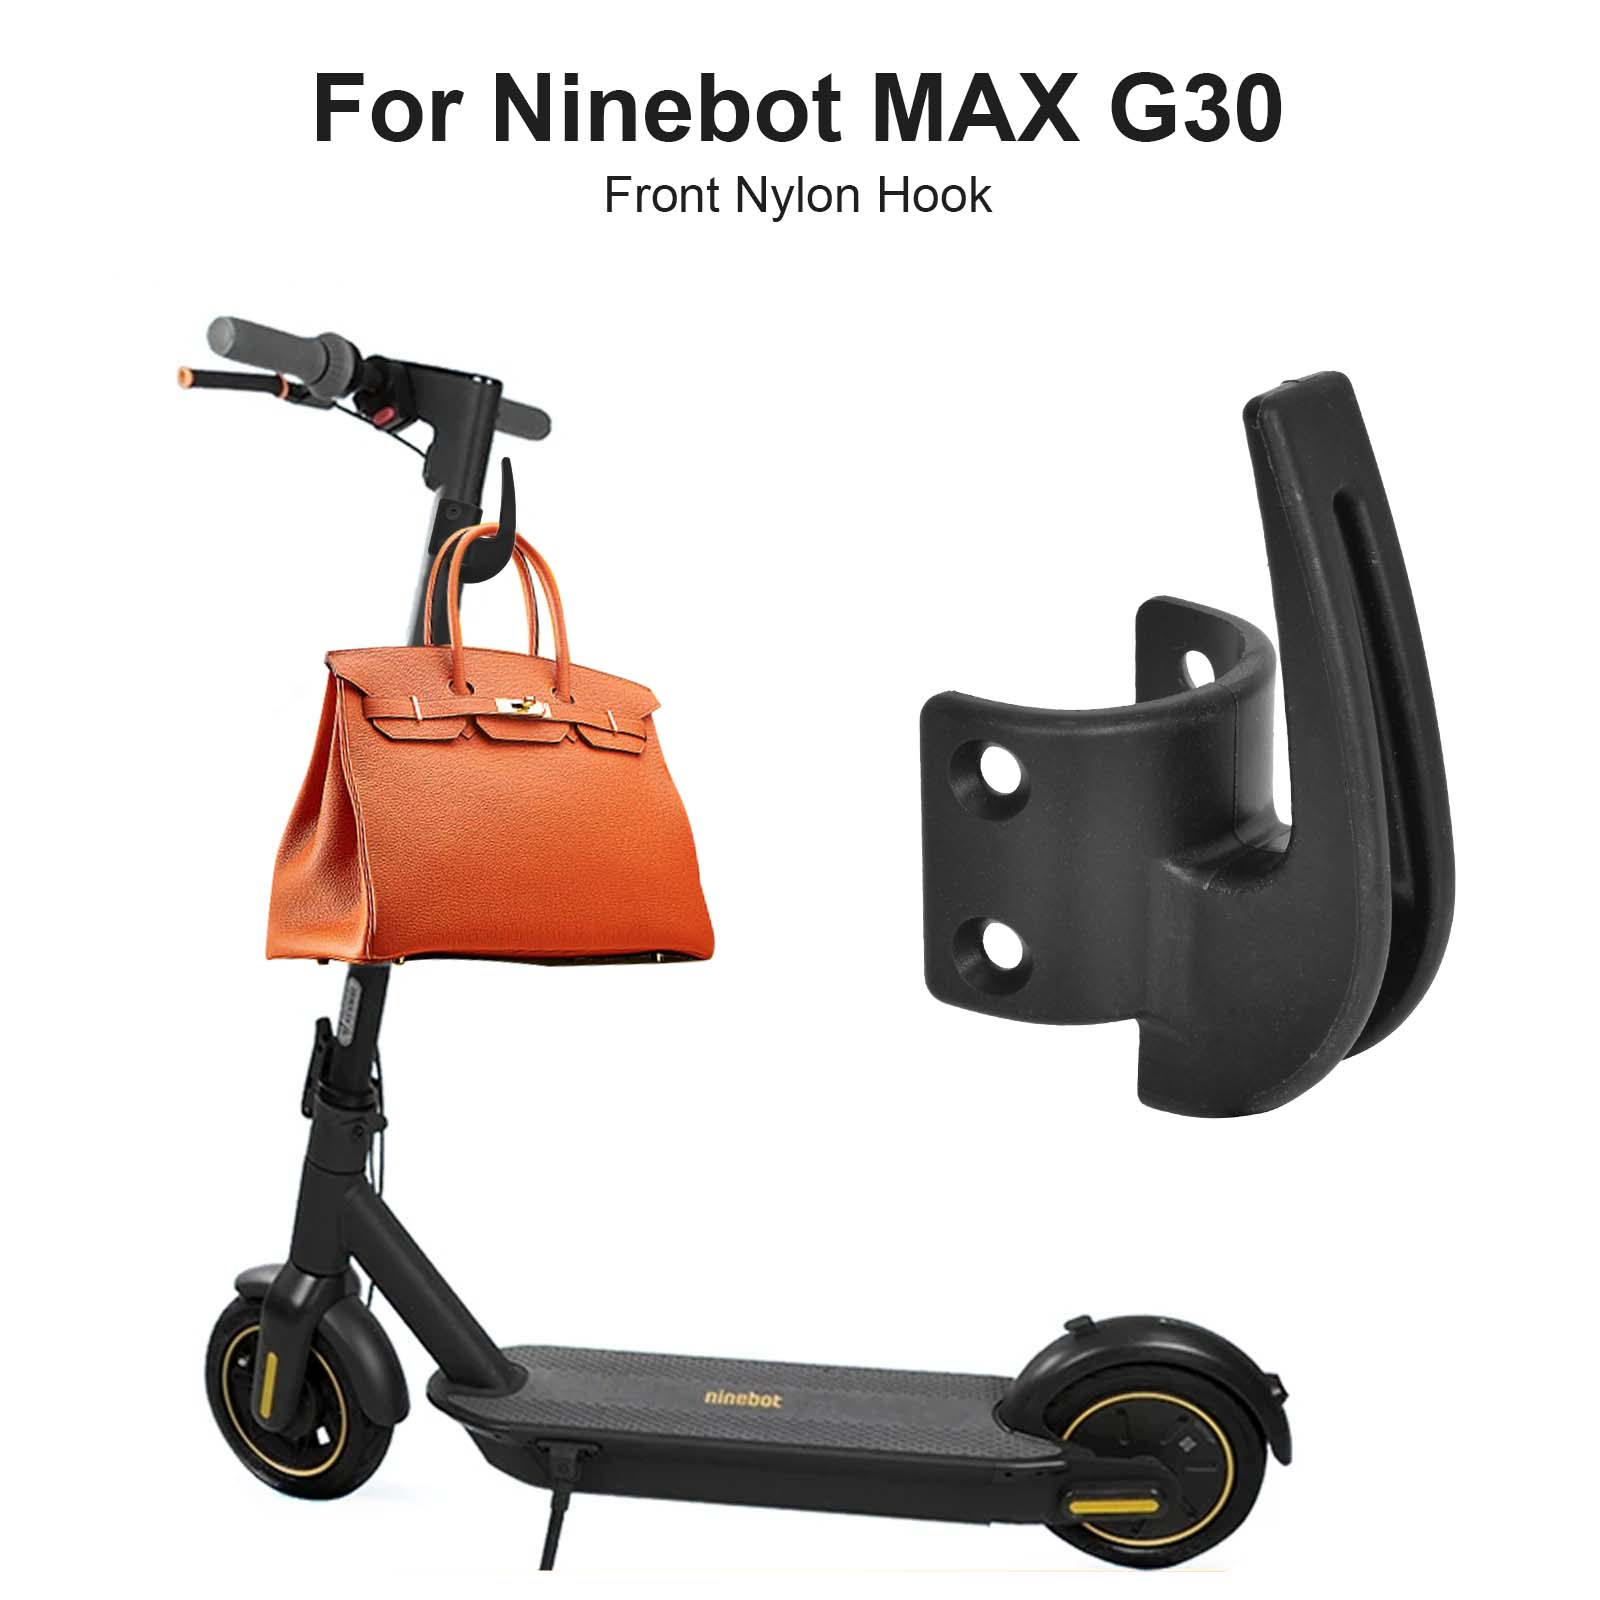 Achetez Crochet en Nylon Pour Ninebot Max G30 Scooter Electric